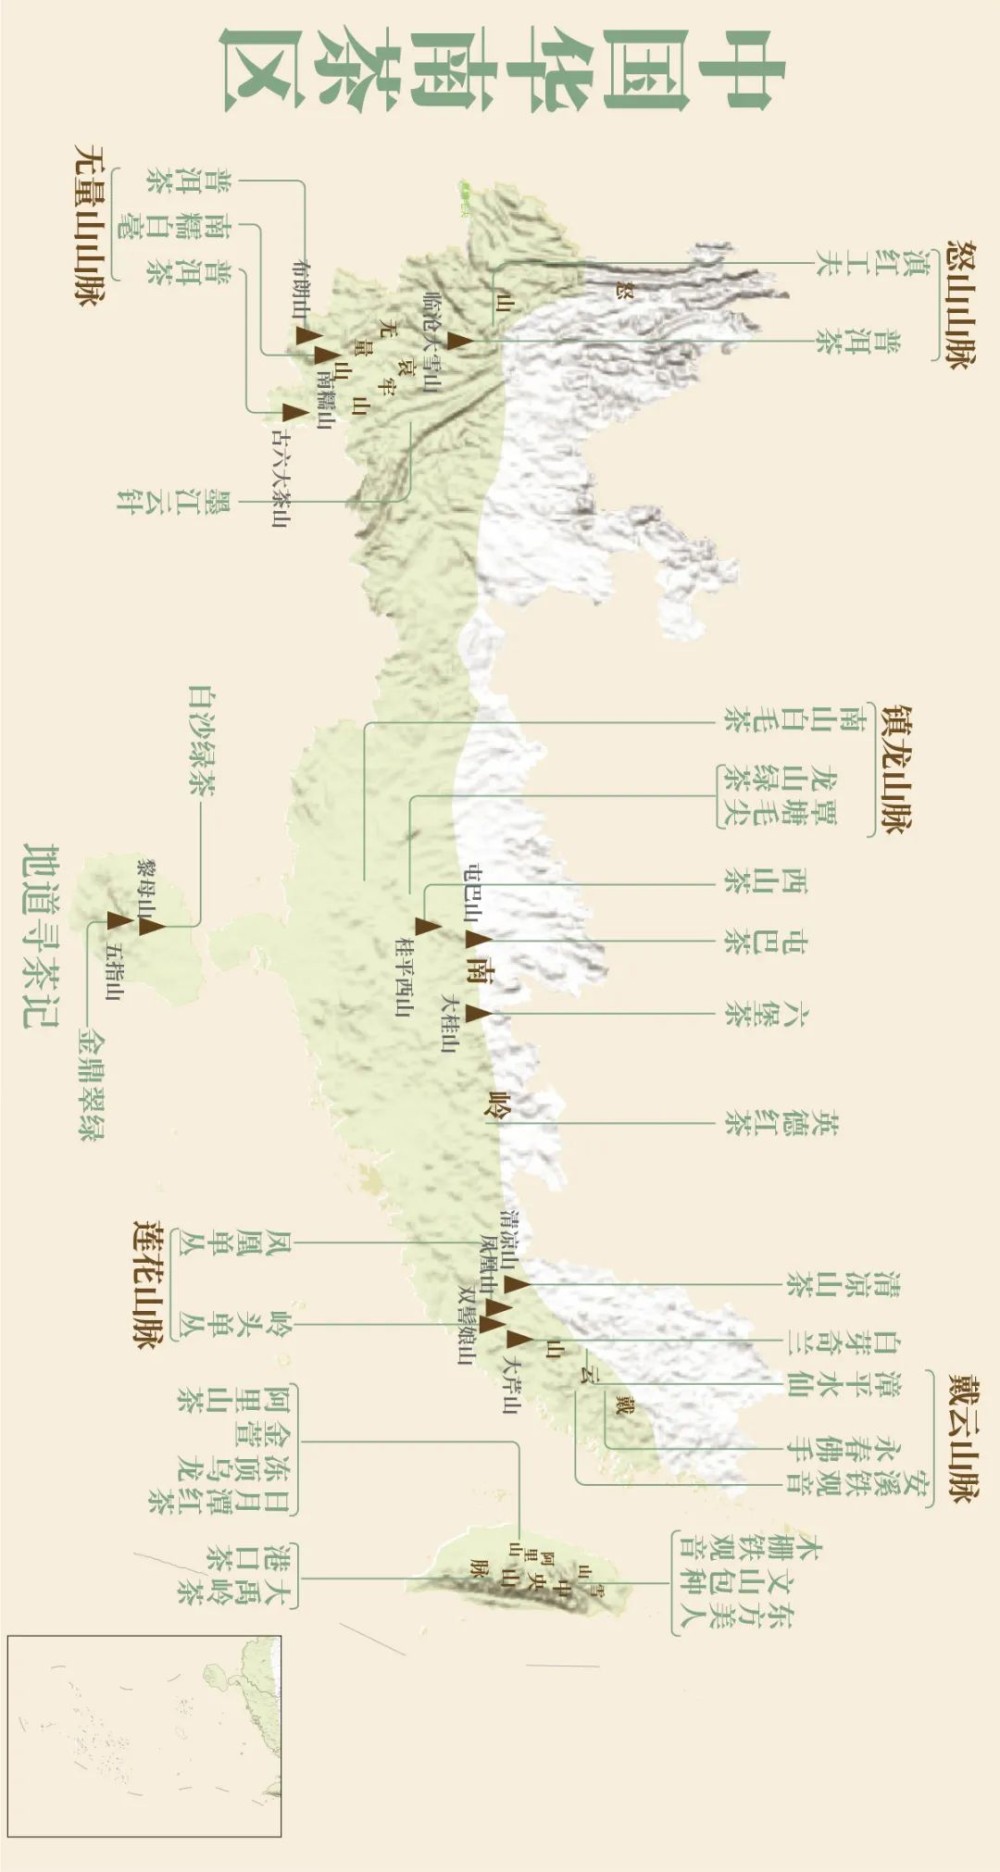 华南茶区位于大樟溪、雁石溪、梅江、连江、